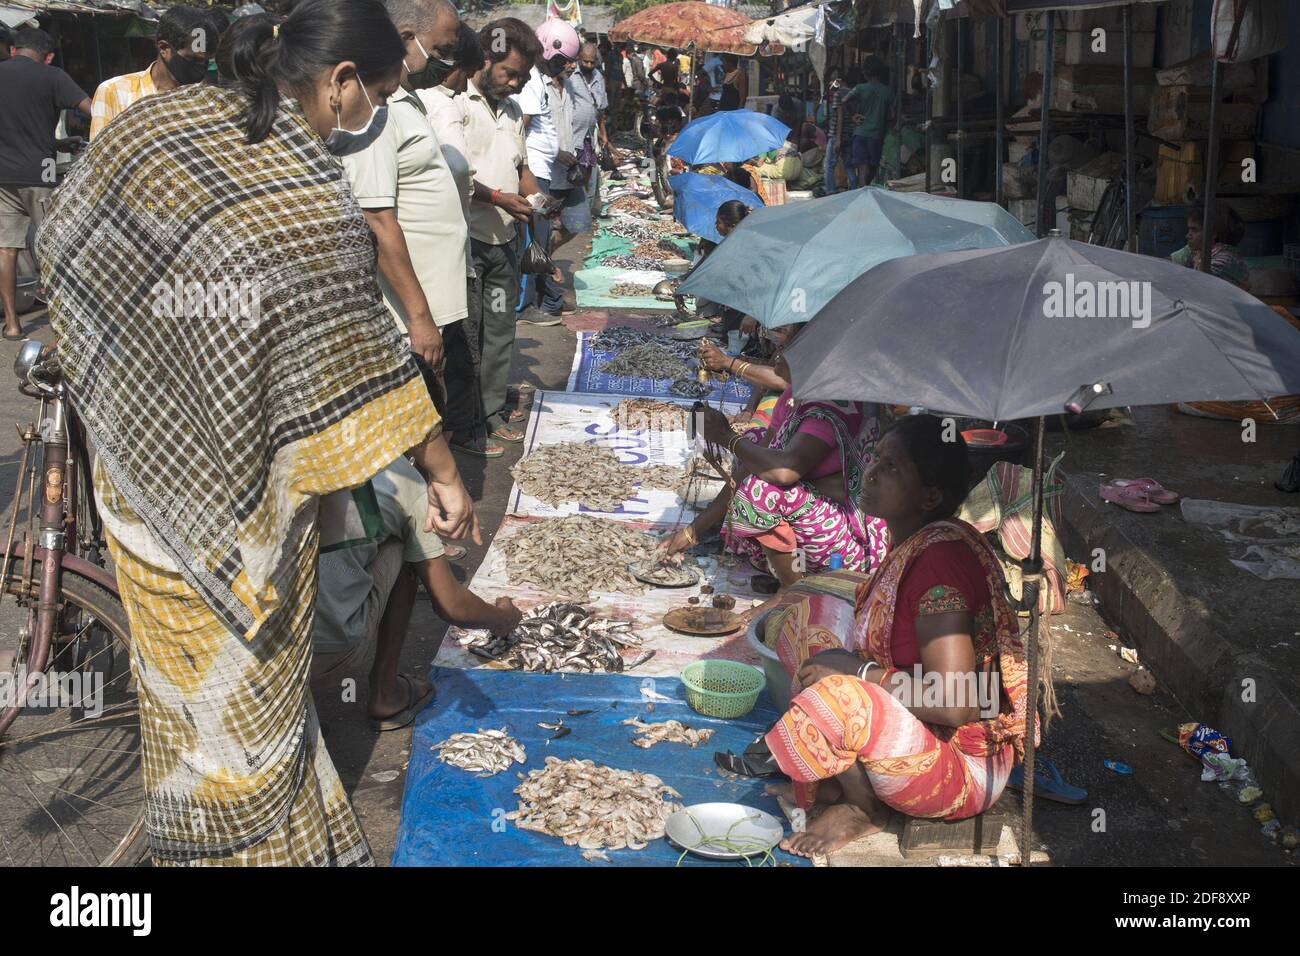 Die Indianer kaufen Fisch bei Muchi bazzar in Kalkutta. Indien durchläuft eine 21-tägige Sperre für die Corona-Virus-Pandemie. Da die Regierung am Morgen Lockerung zur Absperrung gab, um für den täglichen Bedarf einzukaufen, also weder die soziale Distanzierung noch die Menschen Schutzmasken und Handschuhe benutzen, sind die Behörden nun besorgt über die Ausbreitung der Krankheit. Kolkata, Westbengalen, Indien am 2. April 2020. Foto von Arindam Mukherjee/ABACAPRESS.COM. Stockfoto